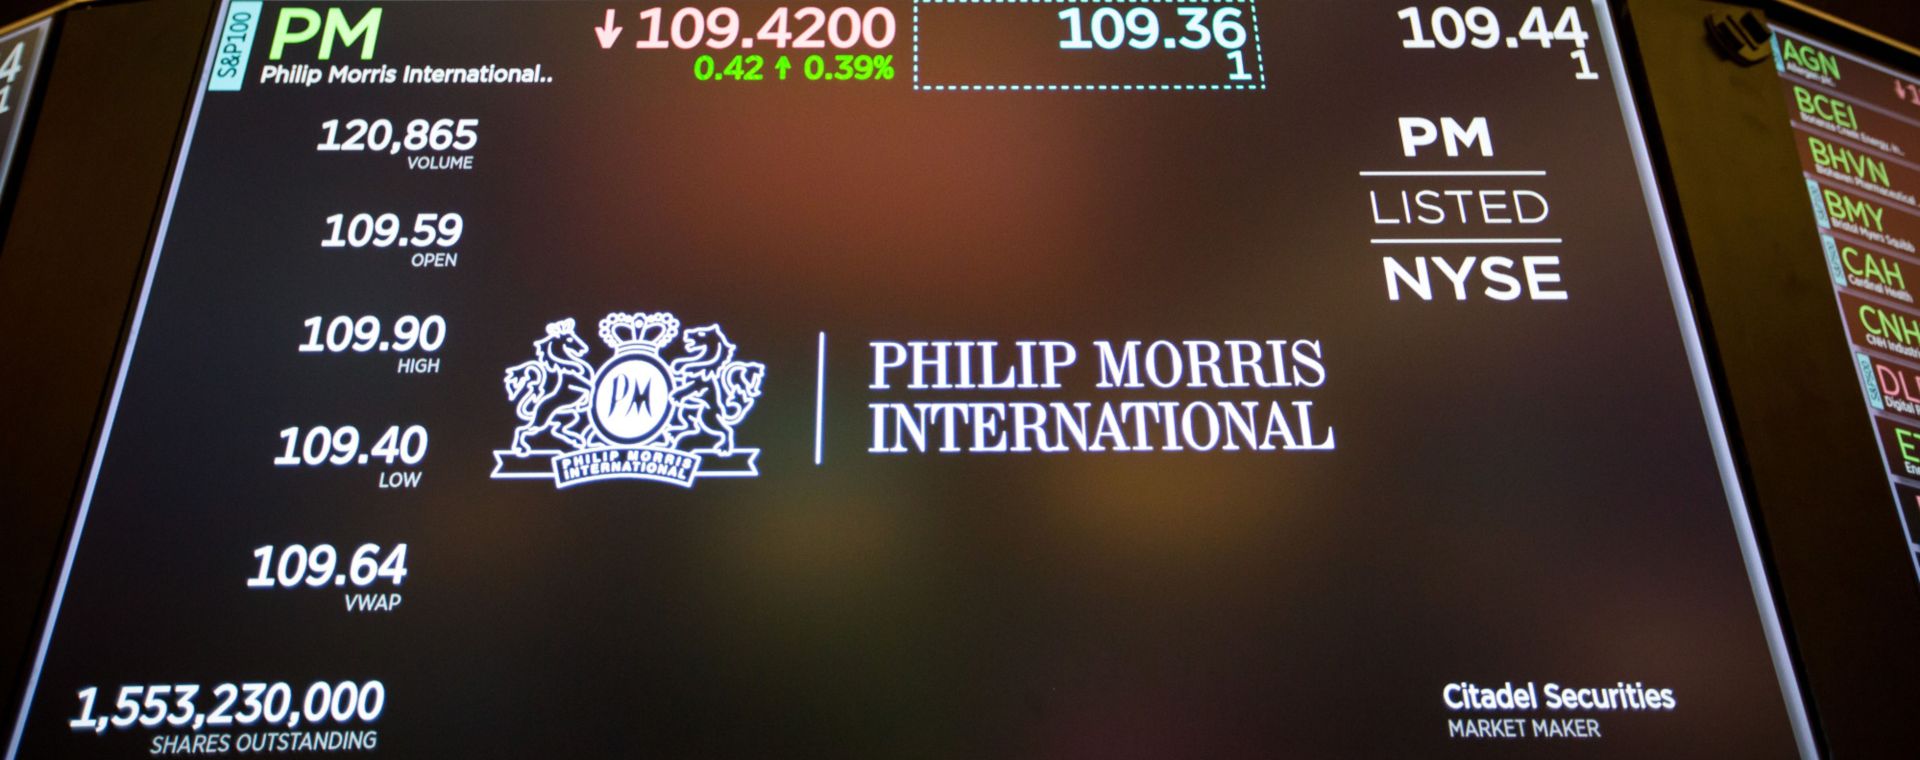 Sebuah monitor menampilkan papan nama Philip Morris International Inc. di lantai New York Stock Exchange (NYSE) di New York. /Bloomberg